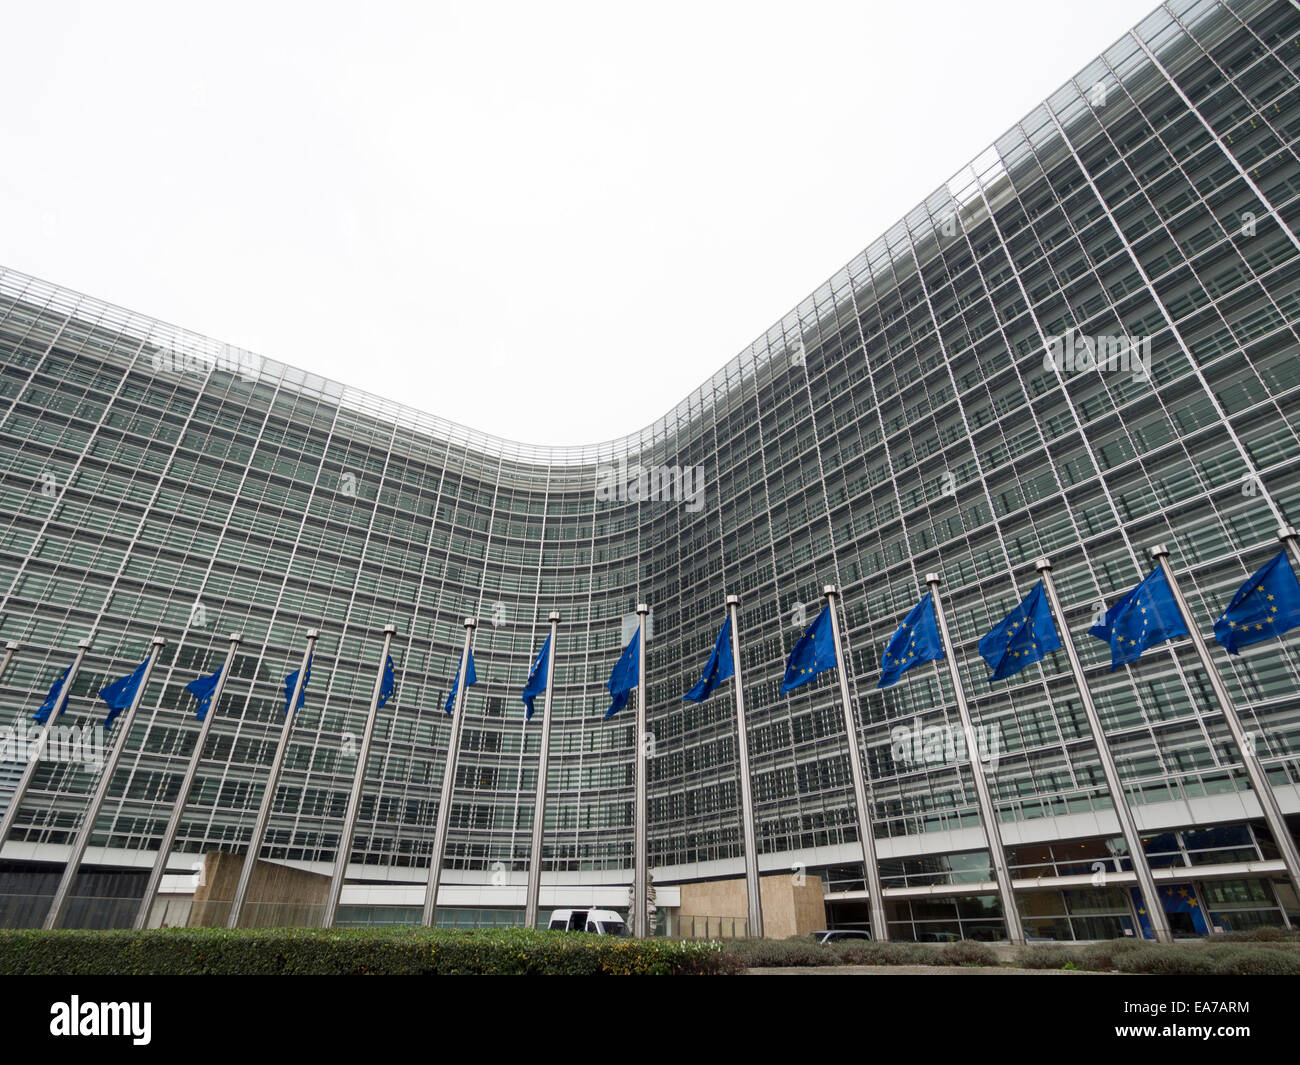 Drapeaux de l'Union européenne devant le bâtiment du Berlaymont, siège de la Commission européenne à Bruxelles, Belgique, Europe Banque D'Images